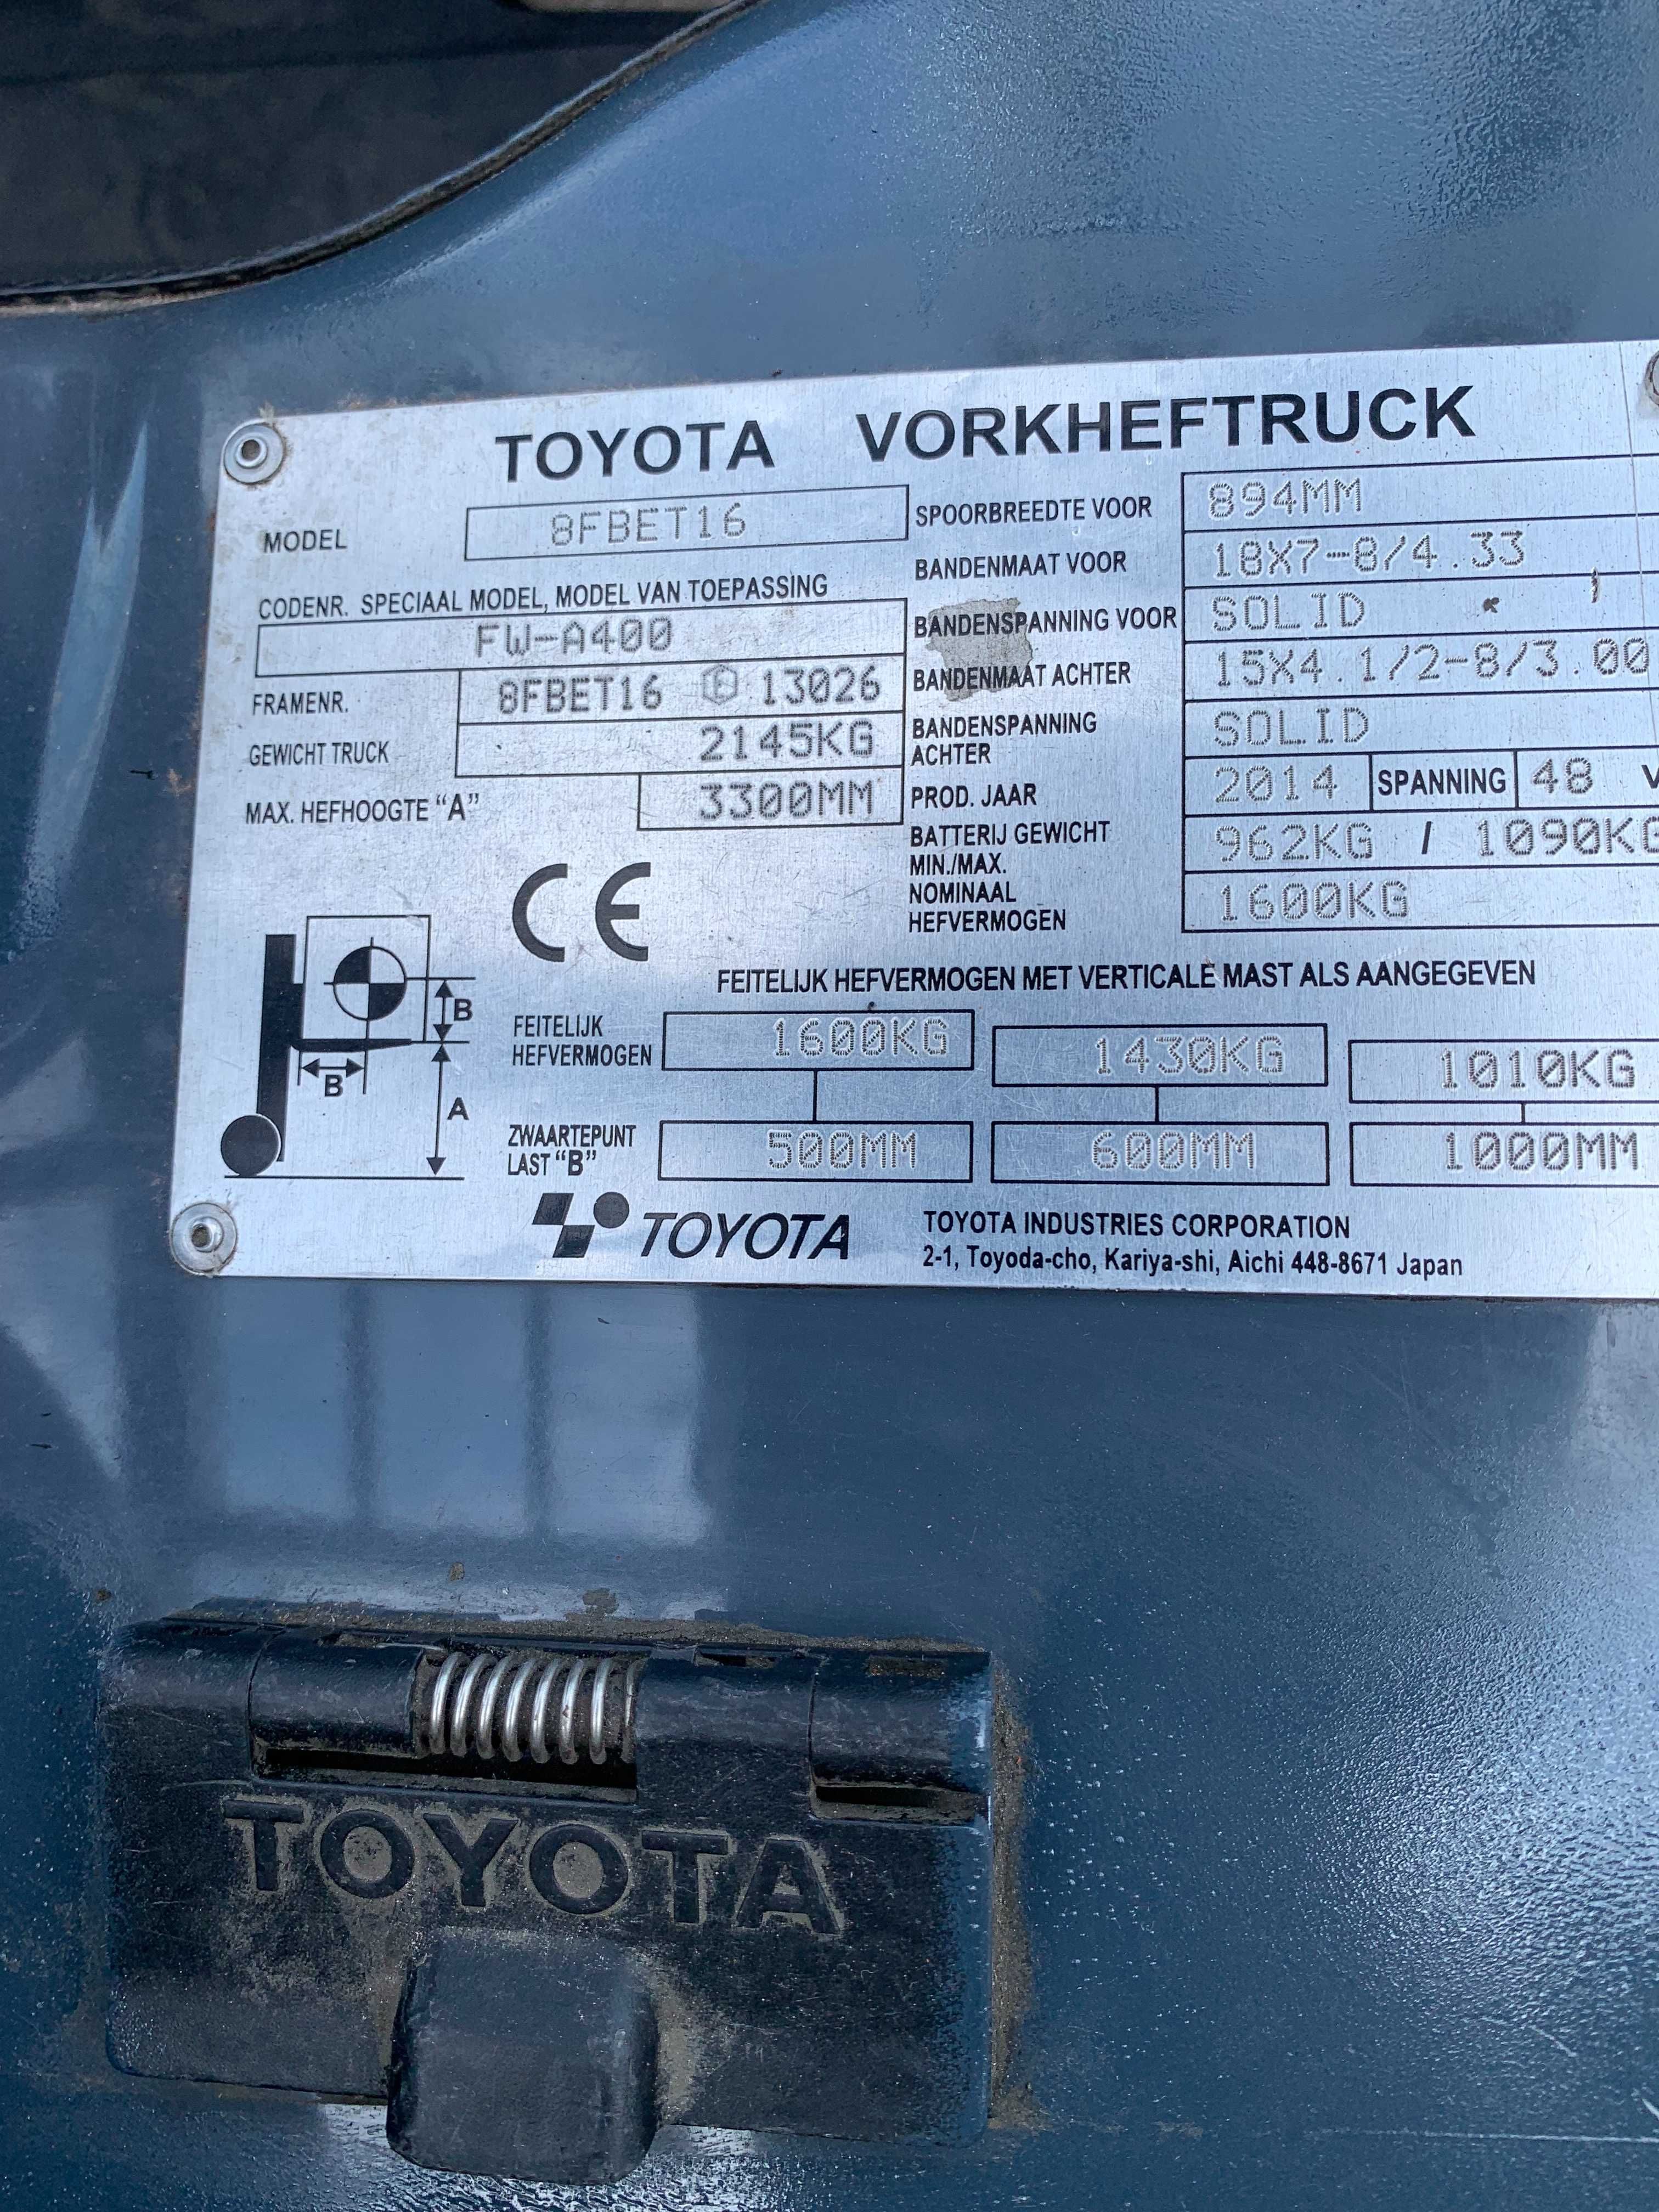 Electrostivuitor Toyota Seria 8-FBEKT-16-13026 Anul fabricatiei 2014